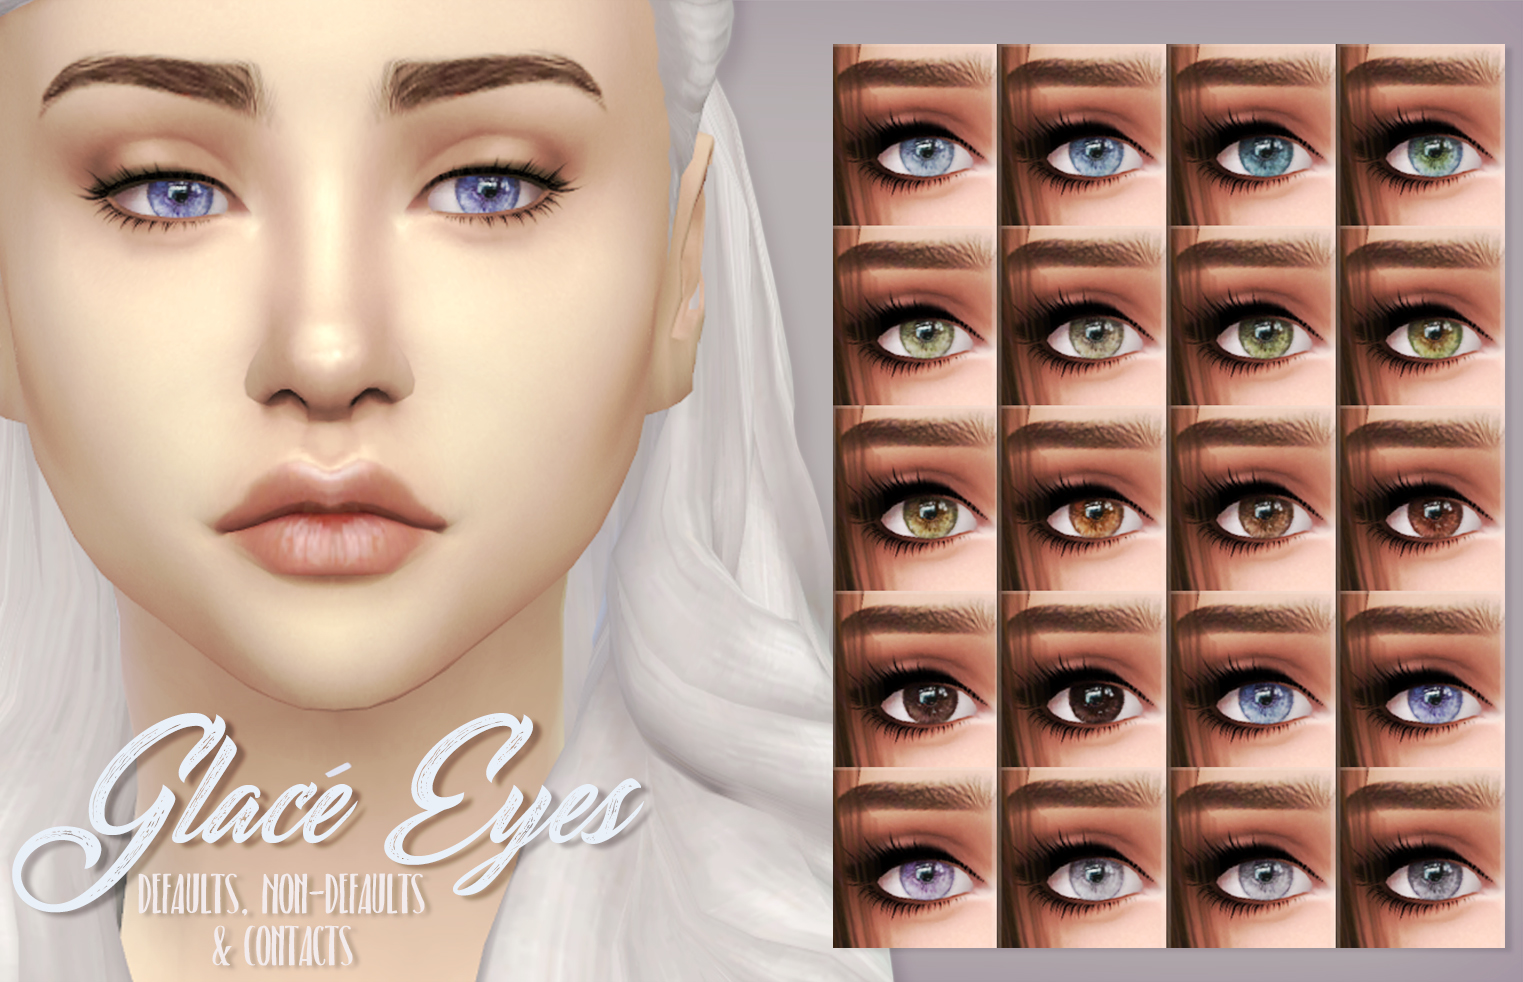 Sims 4 Custom Eyes